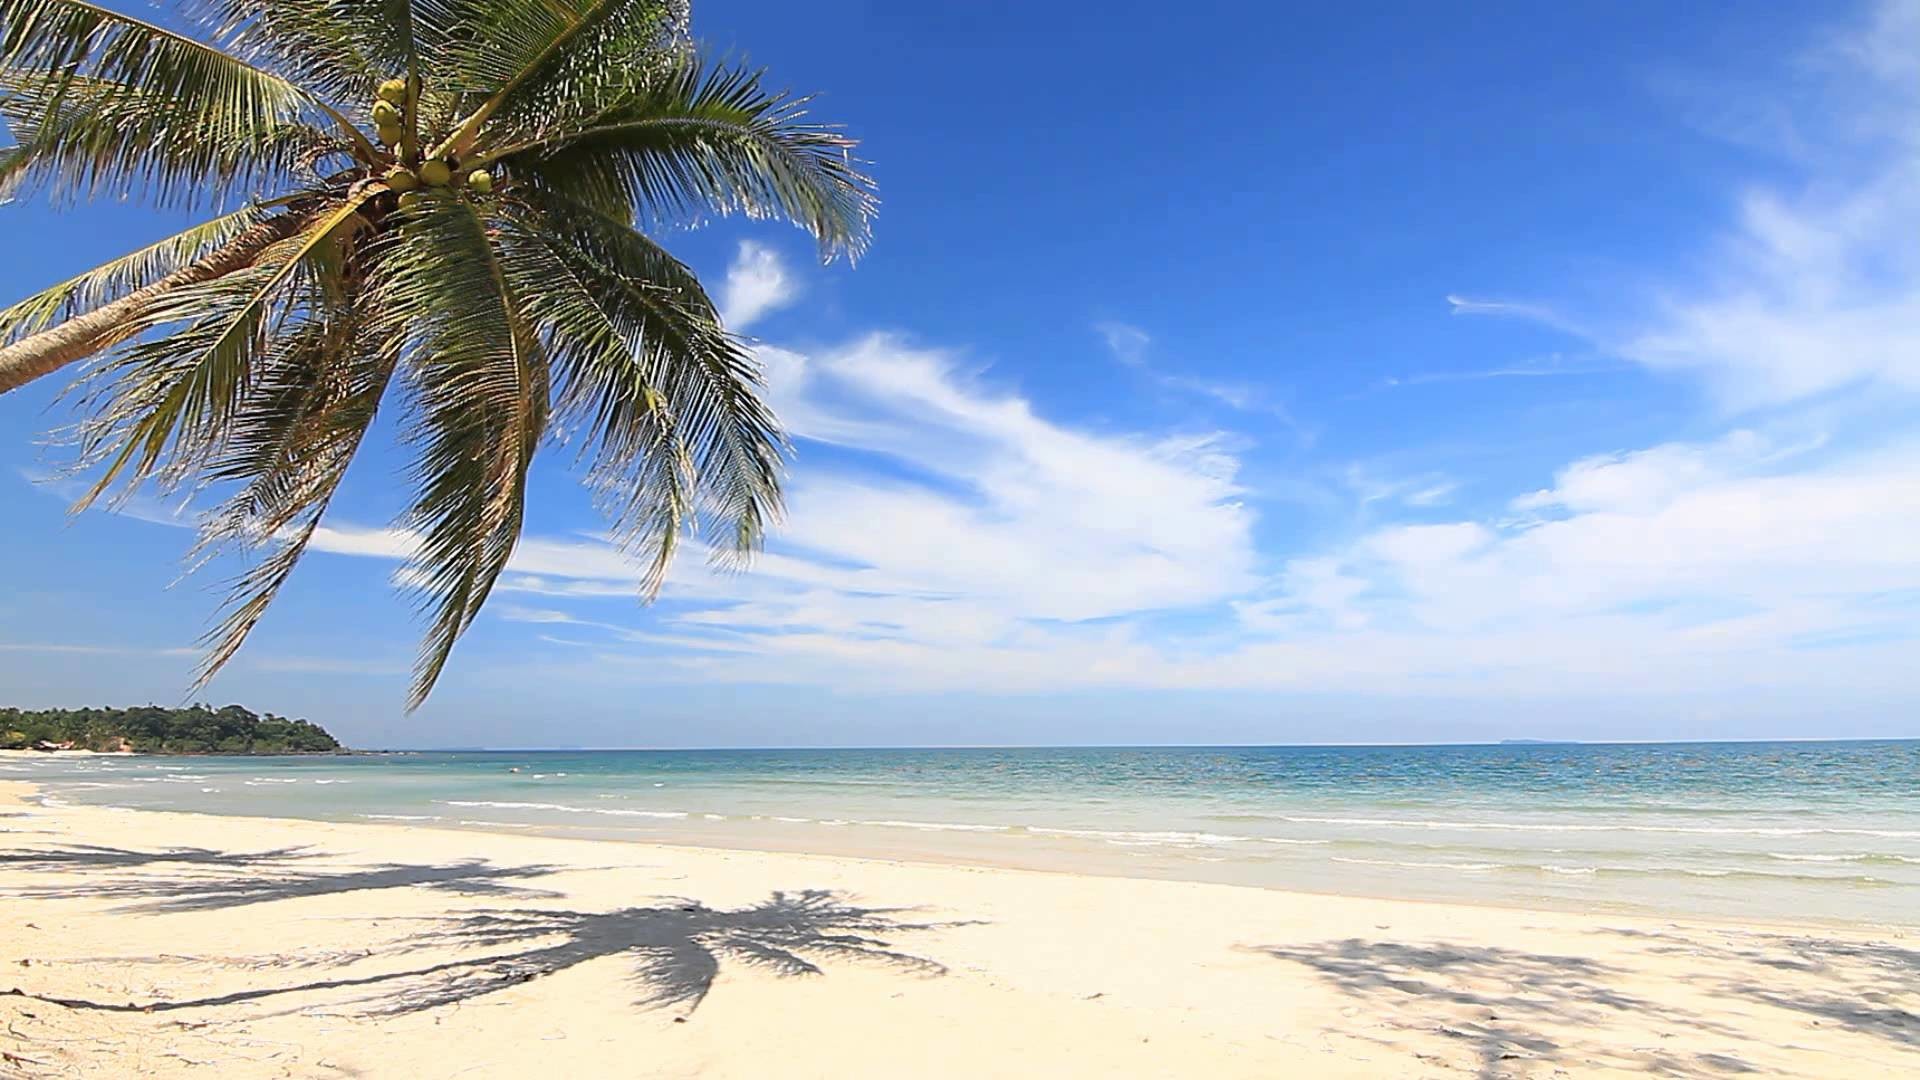 Остров обои айфон. Пляж футаж. Панорама острова пальмы песок пляж. Футаж море пляж. Красивые пейзажи с моря с островом с белым песком.